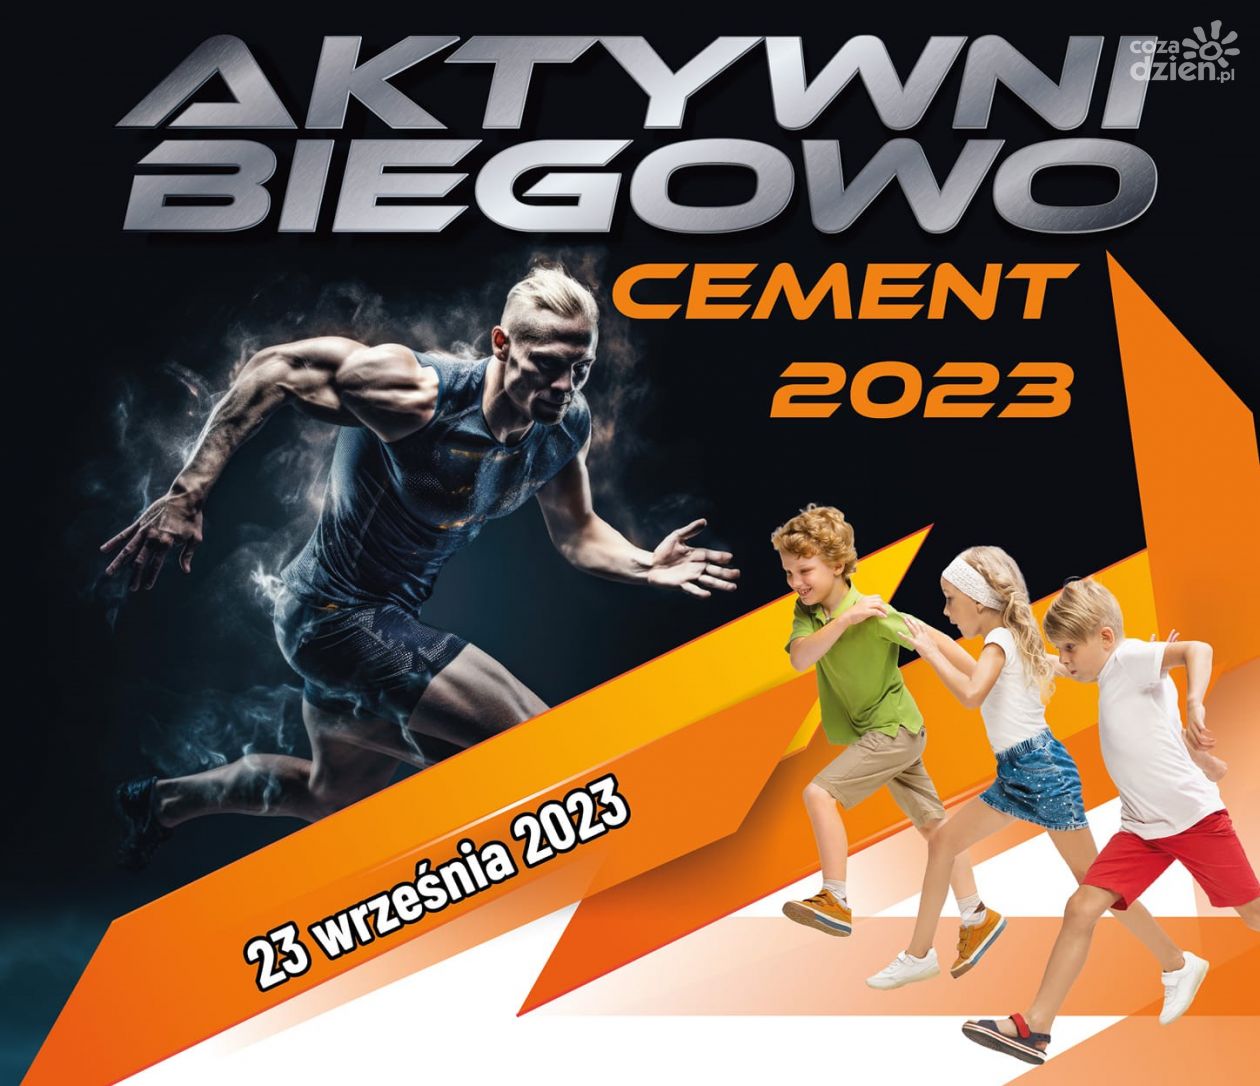 Aktywni Biegowo Cement 2023 w Ożarowie 